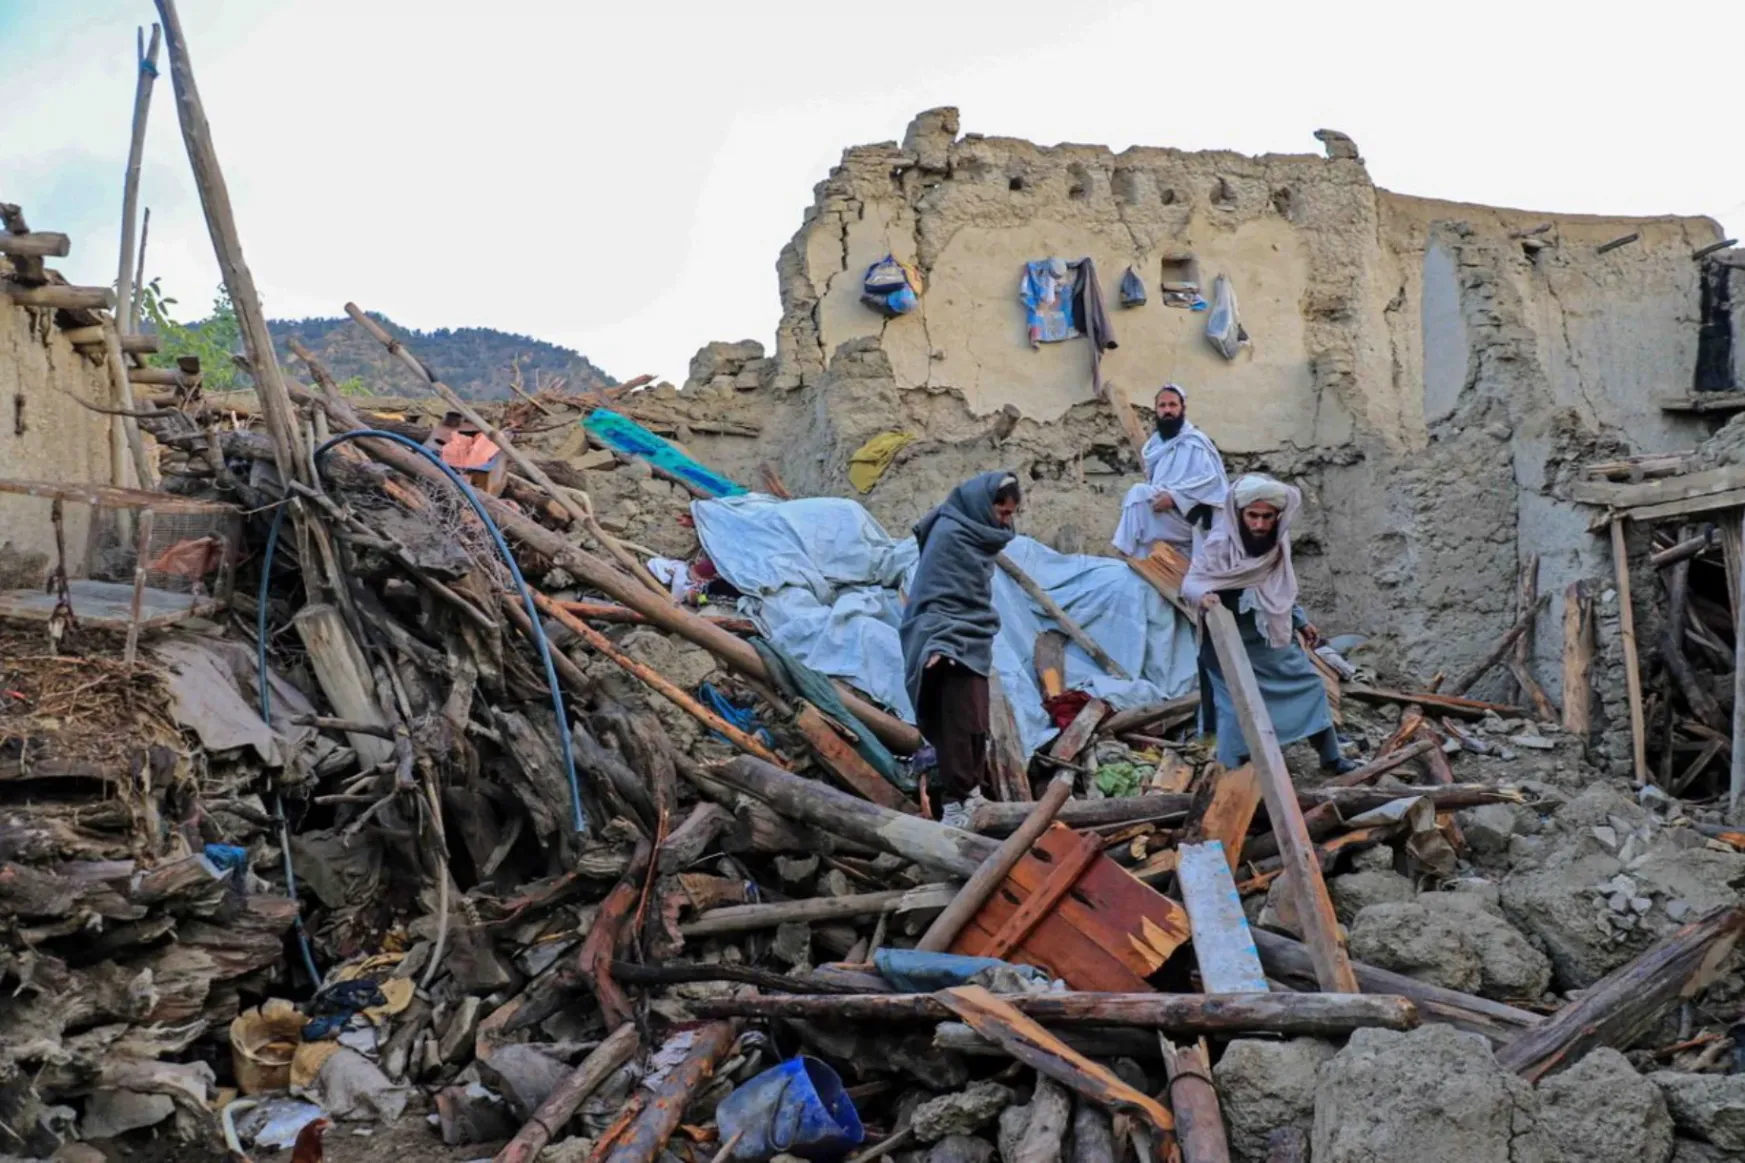 Afganisztáni földrengés: akadozik a mentés, miközben meghaladta az ezret a halottak száma